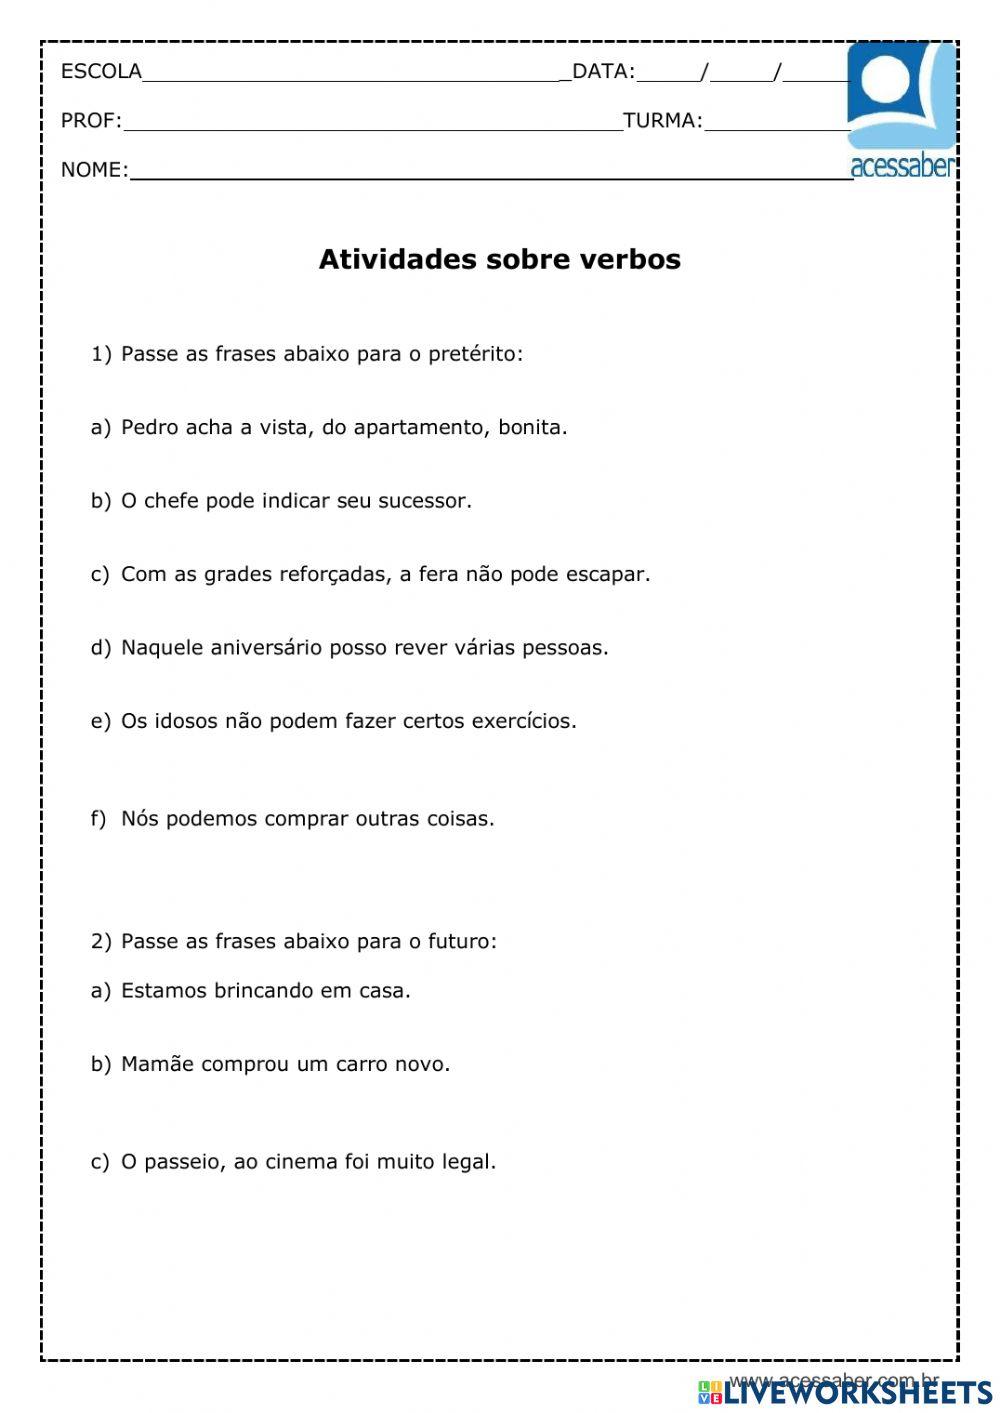 Português - verbos